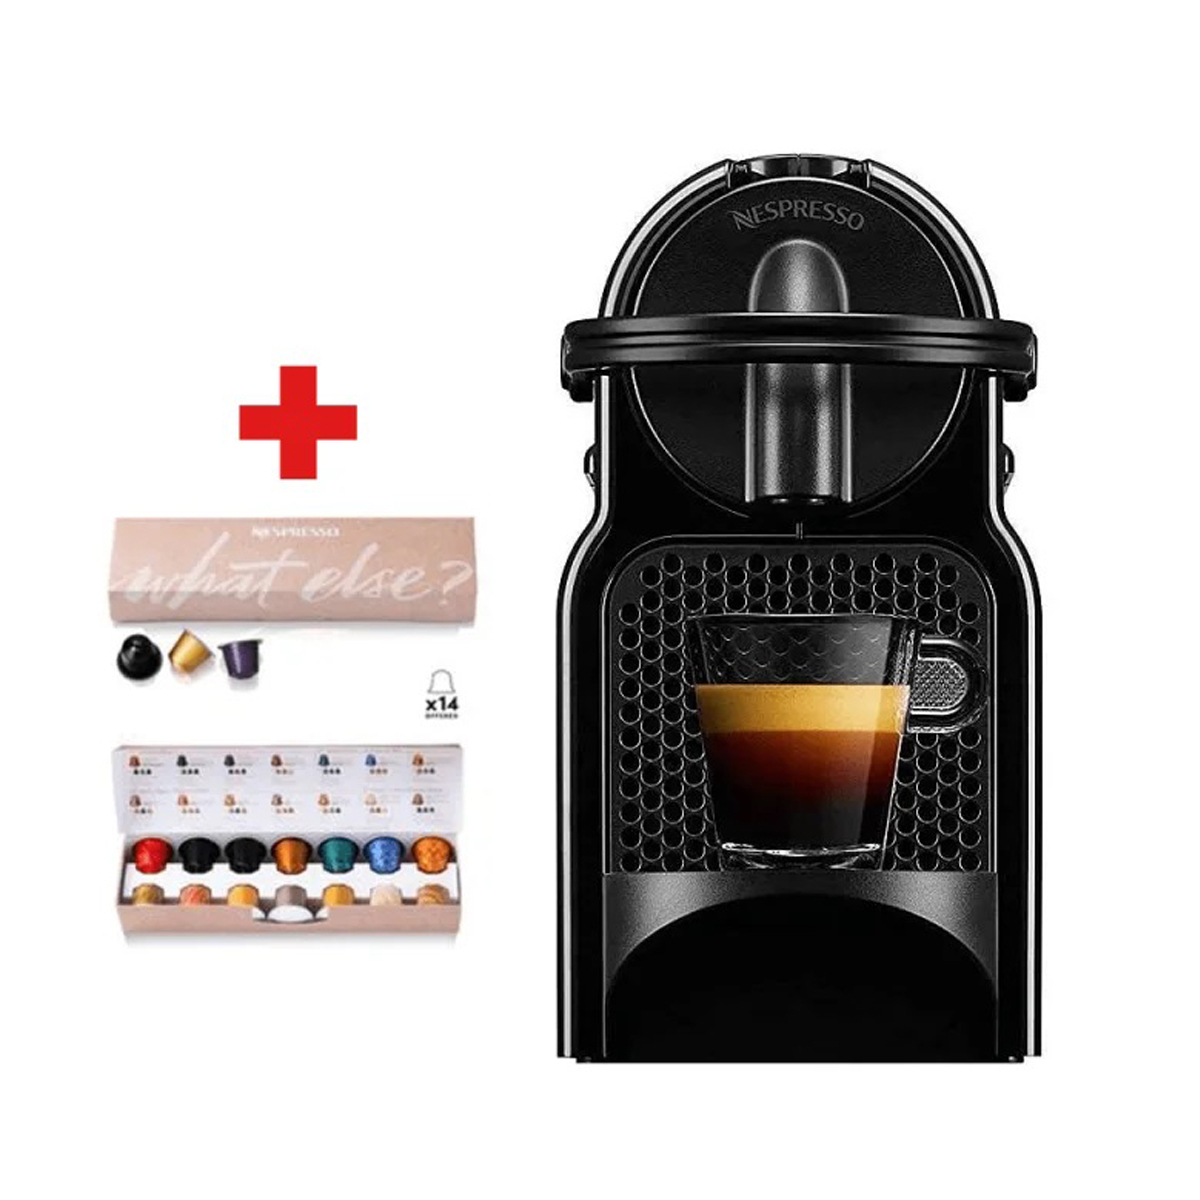 Machine à café expresso et Cappuccino UFESA - Talos